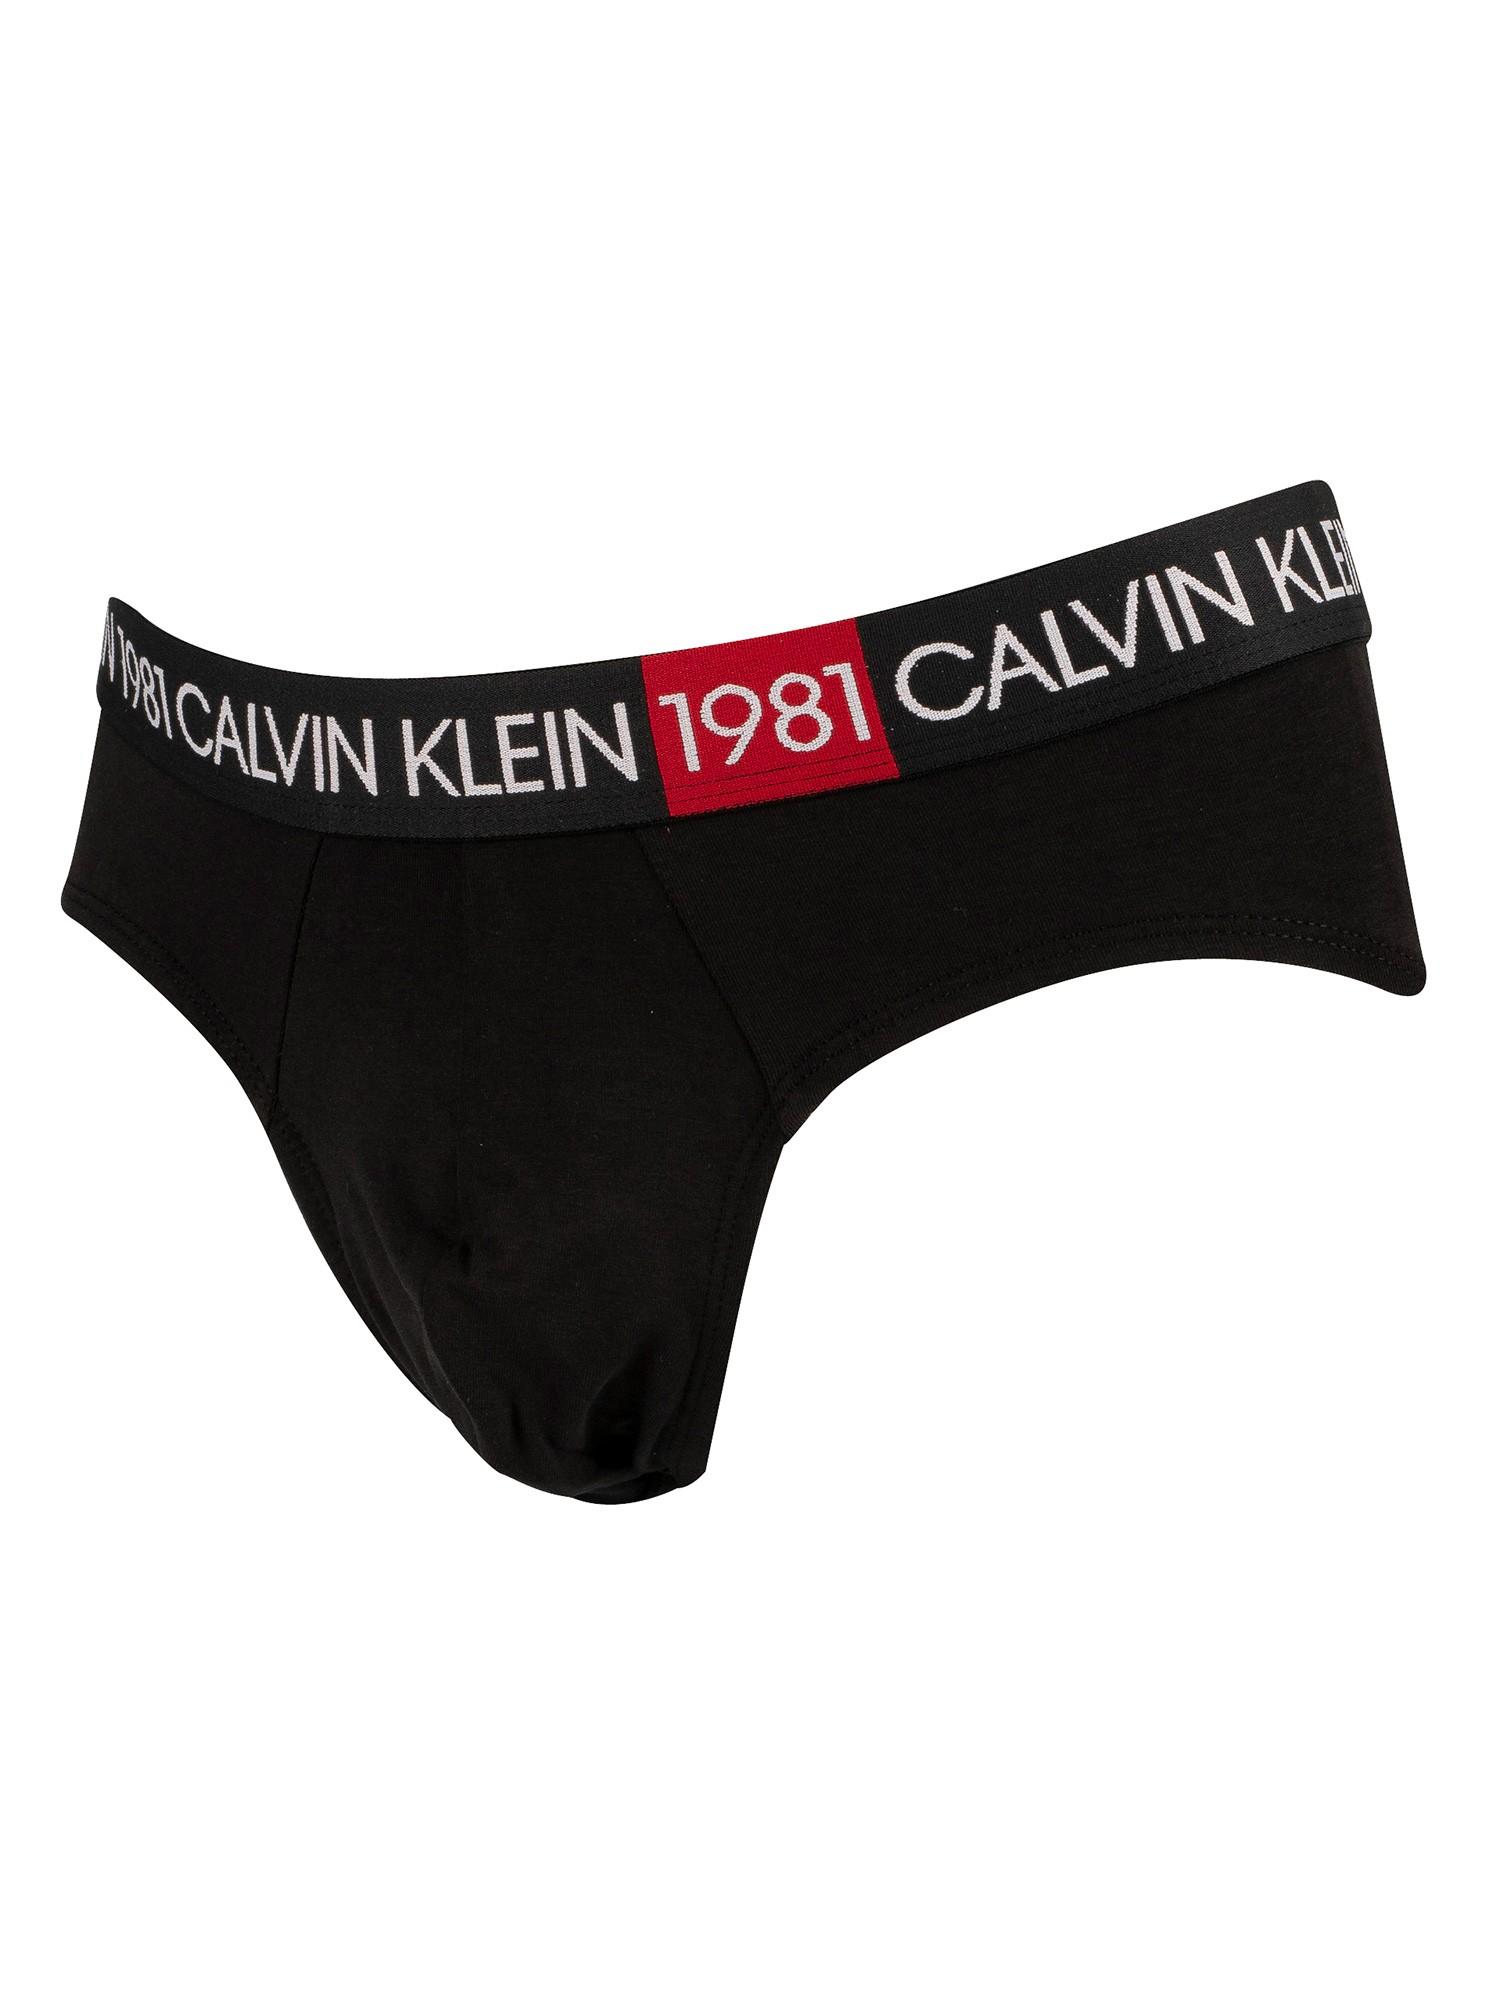 Calvin Klein Cotton 1981 Bold Briefs in Black for Men - Lyst